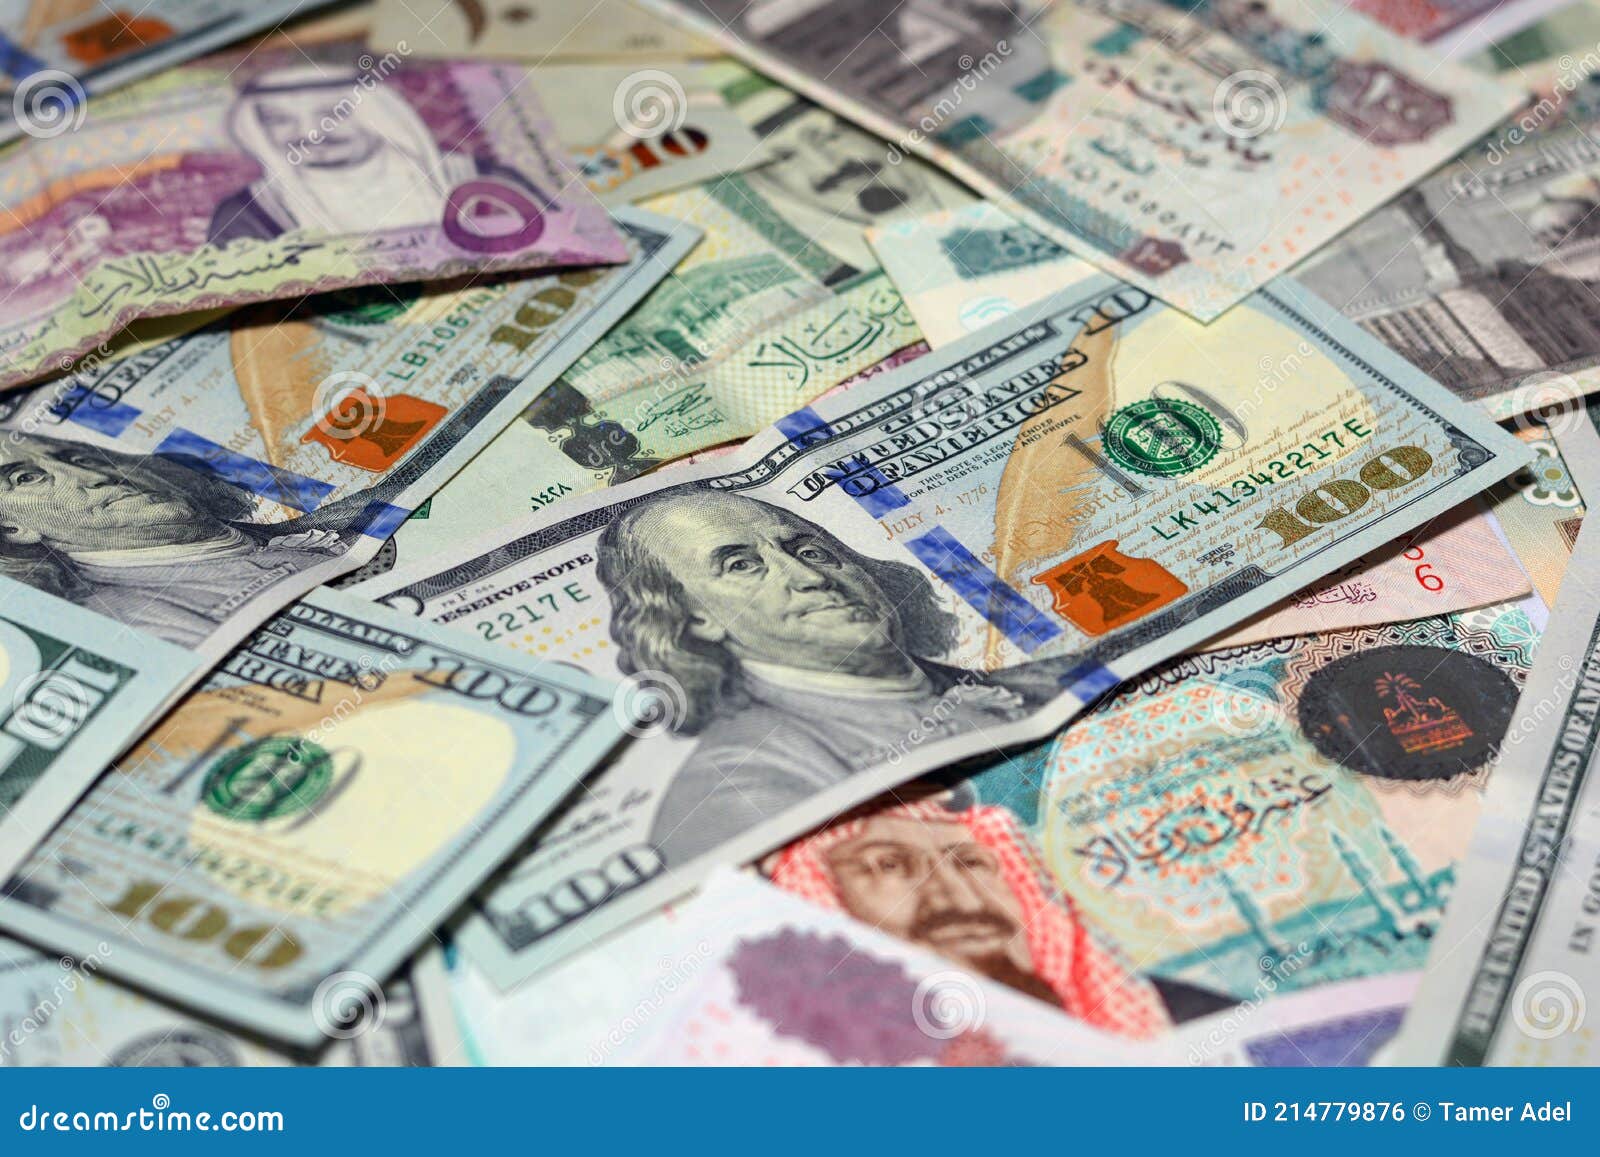 Доллары старого образца в египте принимают ли. Валюта саудовский риал. Деньги Египта. Египетский доллар. Валюта Саудовской Аравии курс.